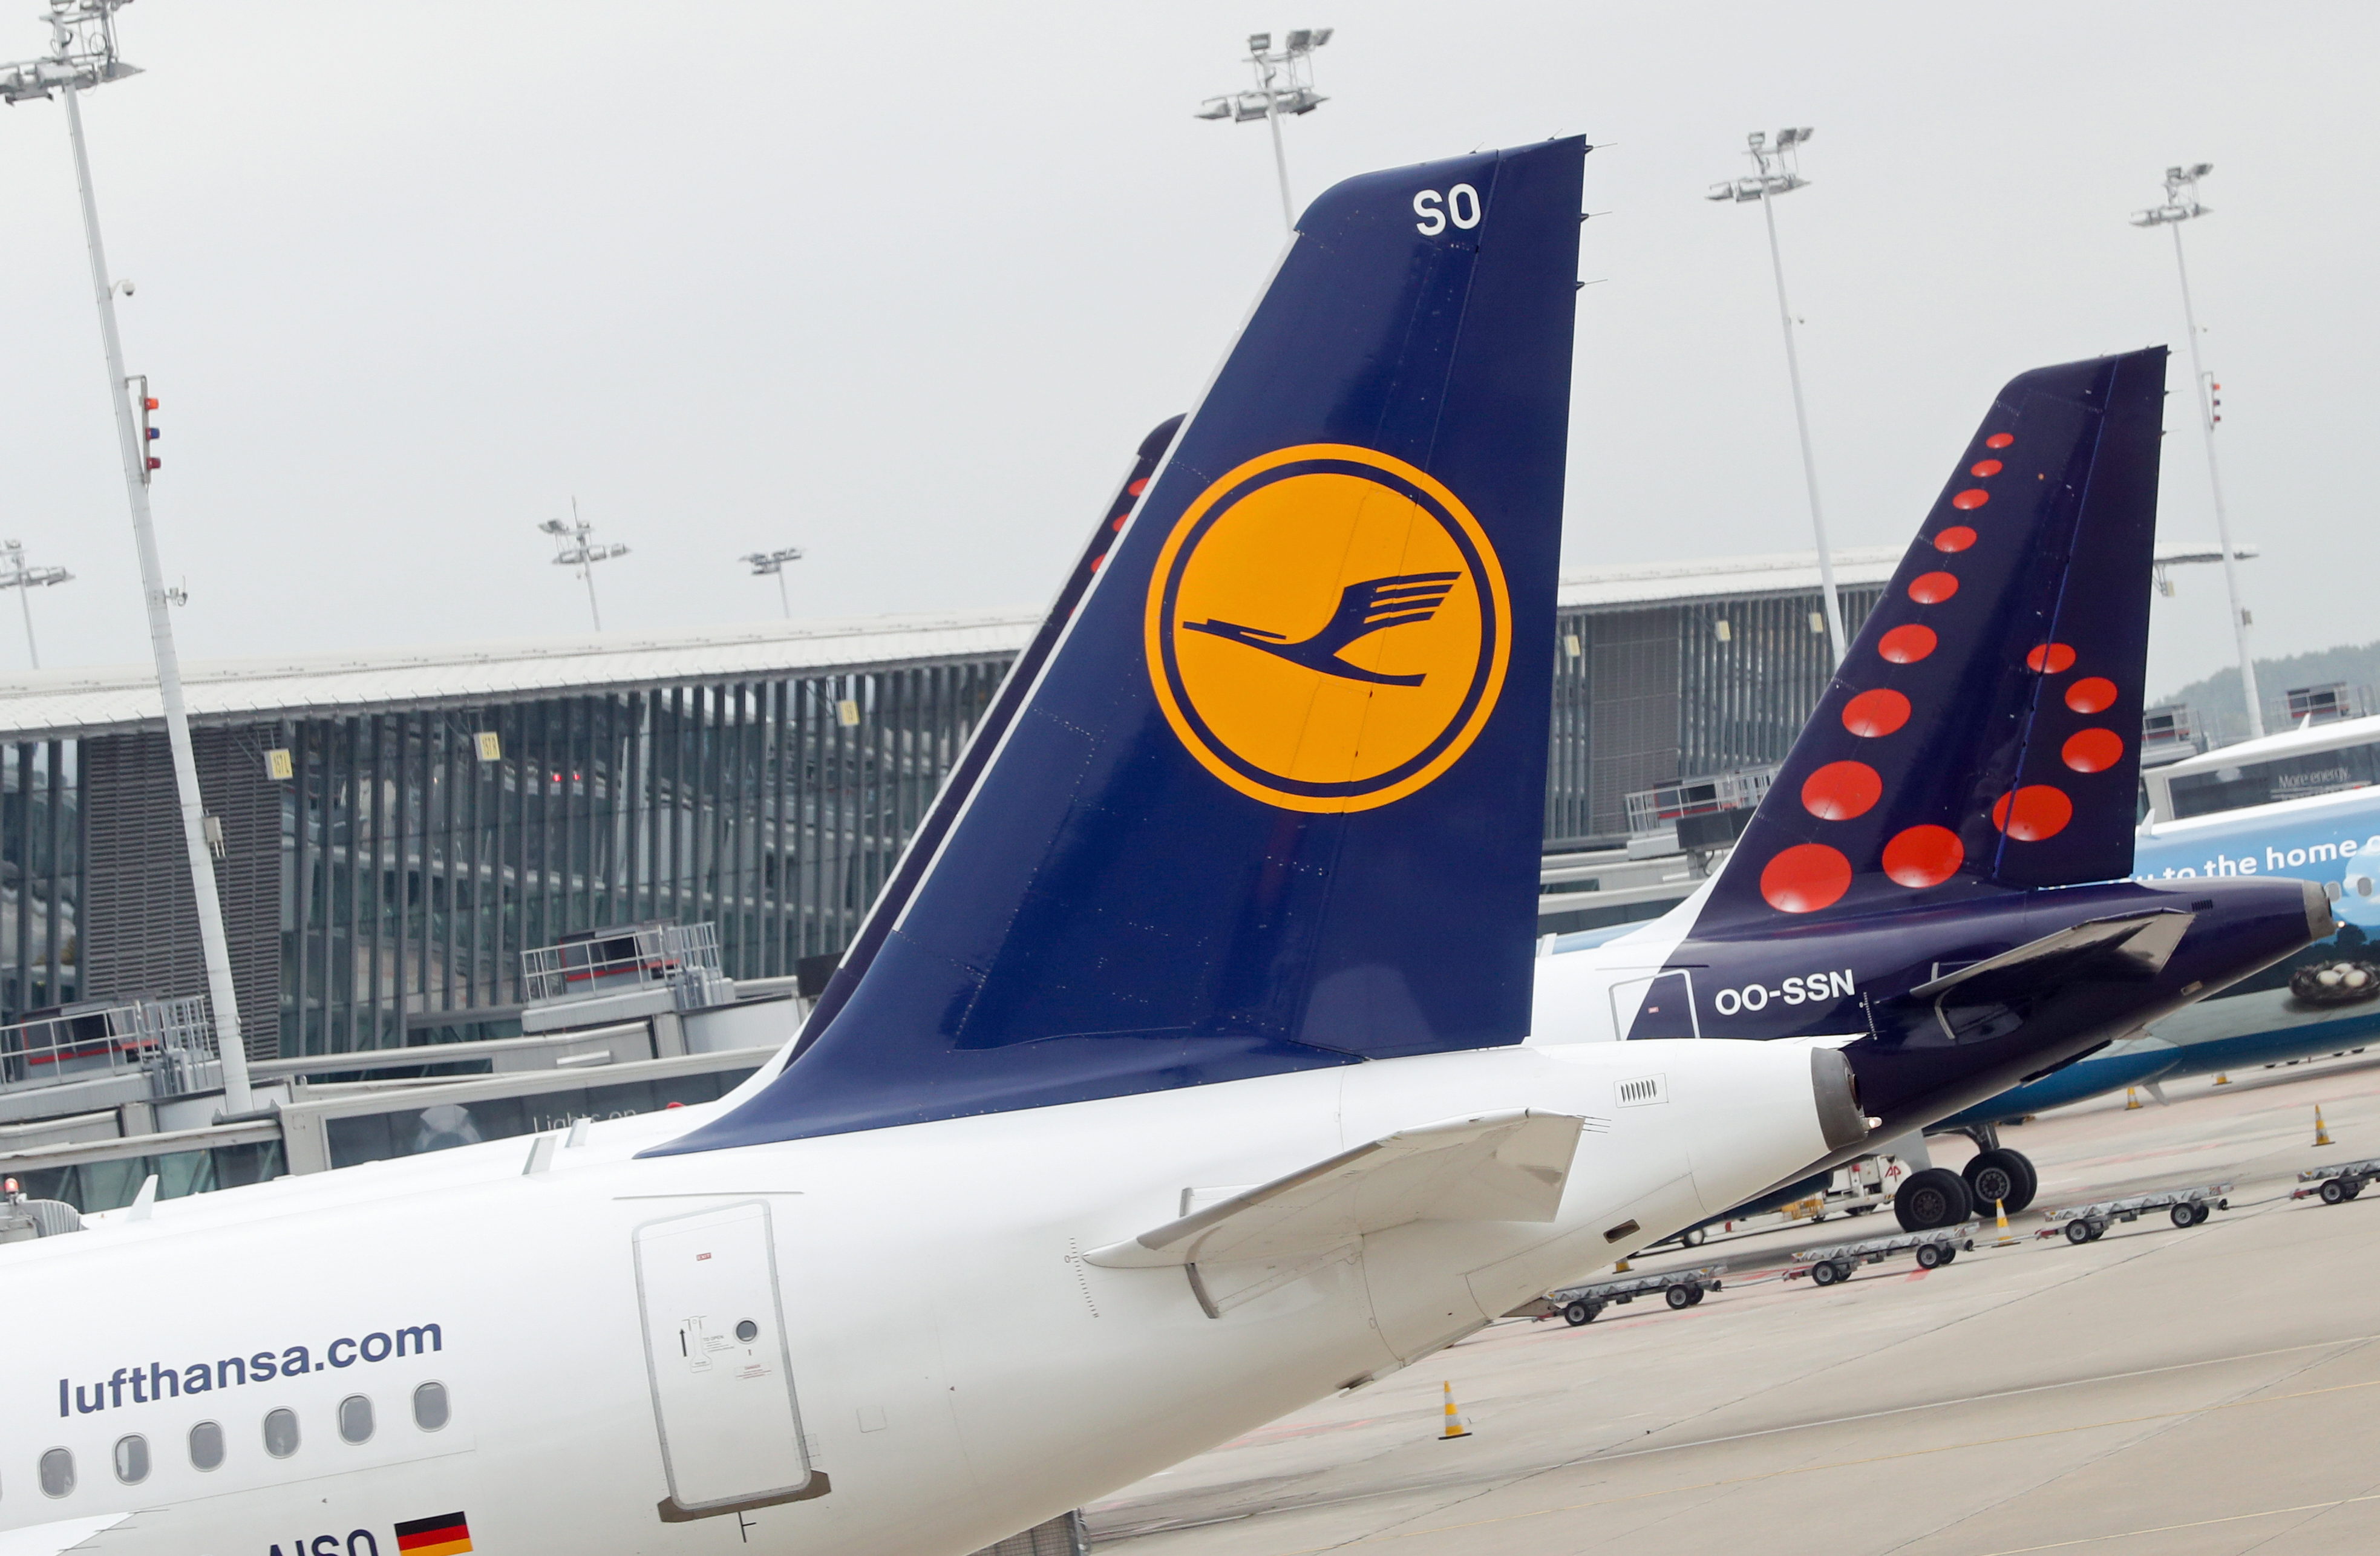 Up to 22 000 job cuts at Lufthansa